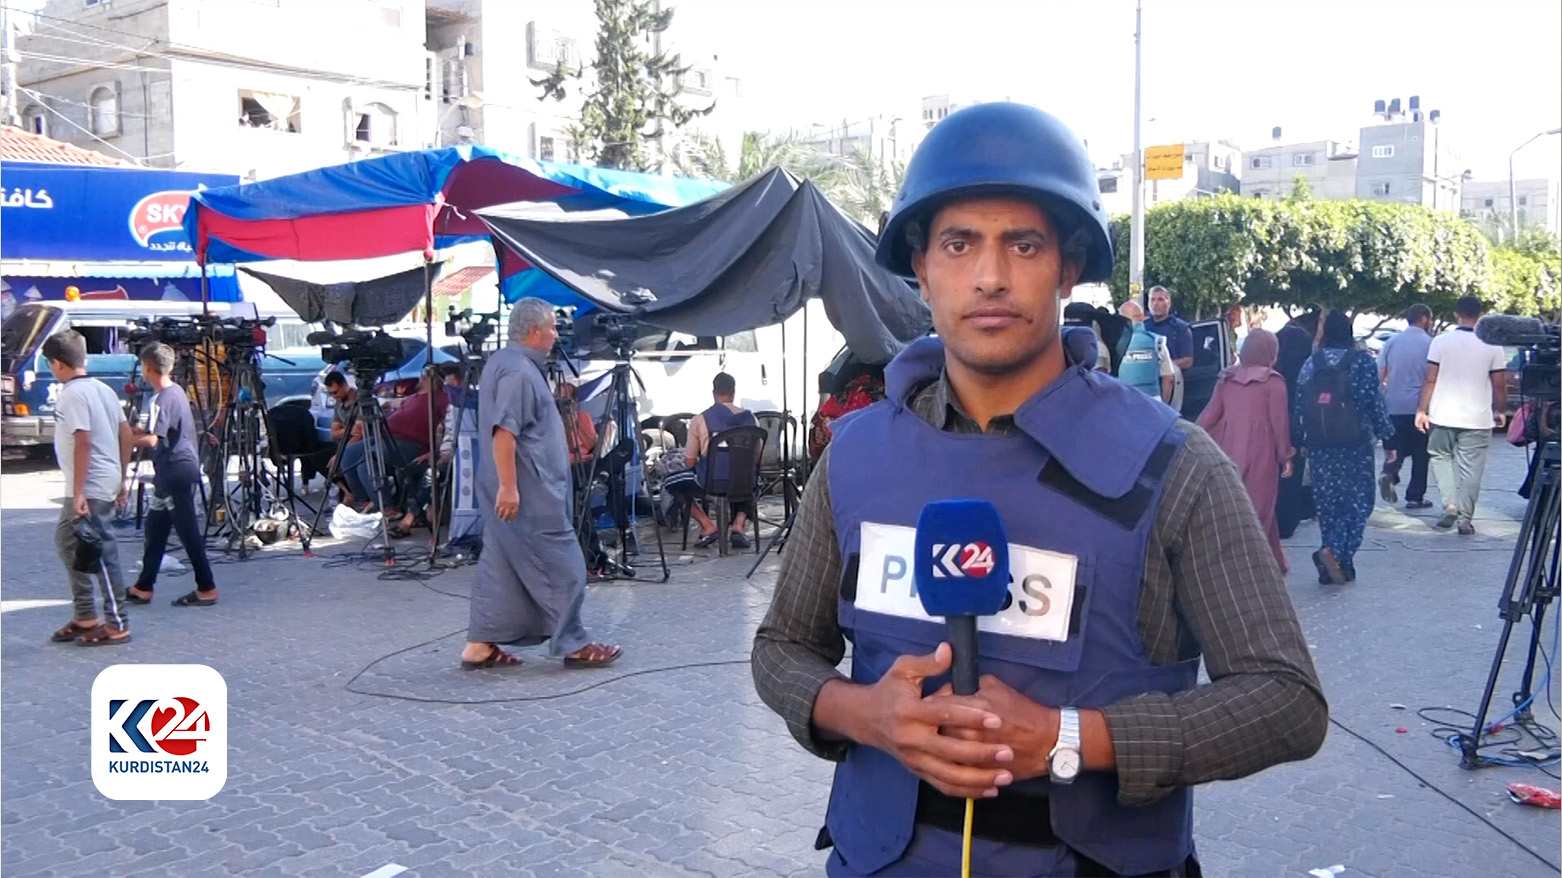 Kurdistan 24's Gaza correspondent Baha al-Tobasi. (Photo: Kurdistan 24)